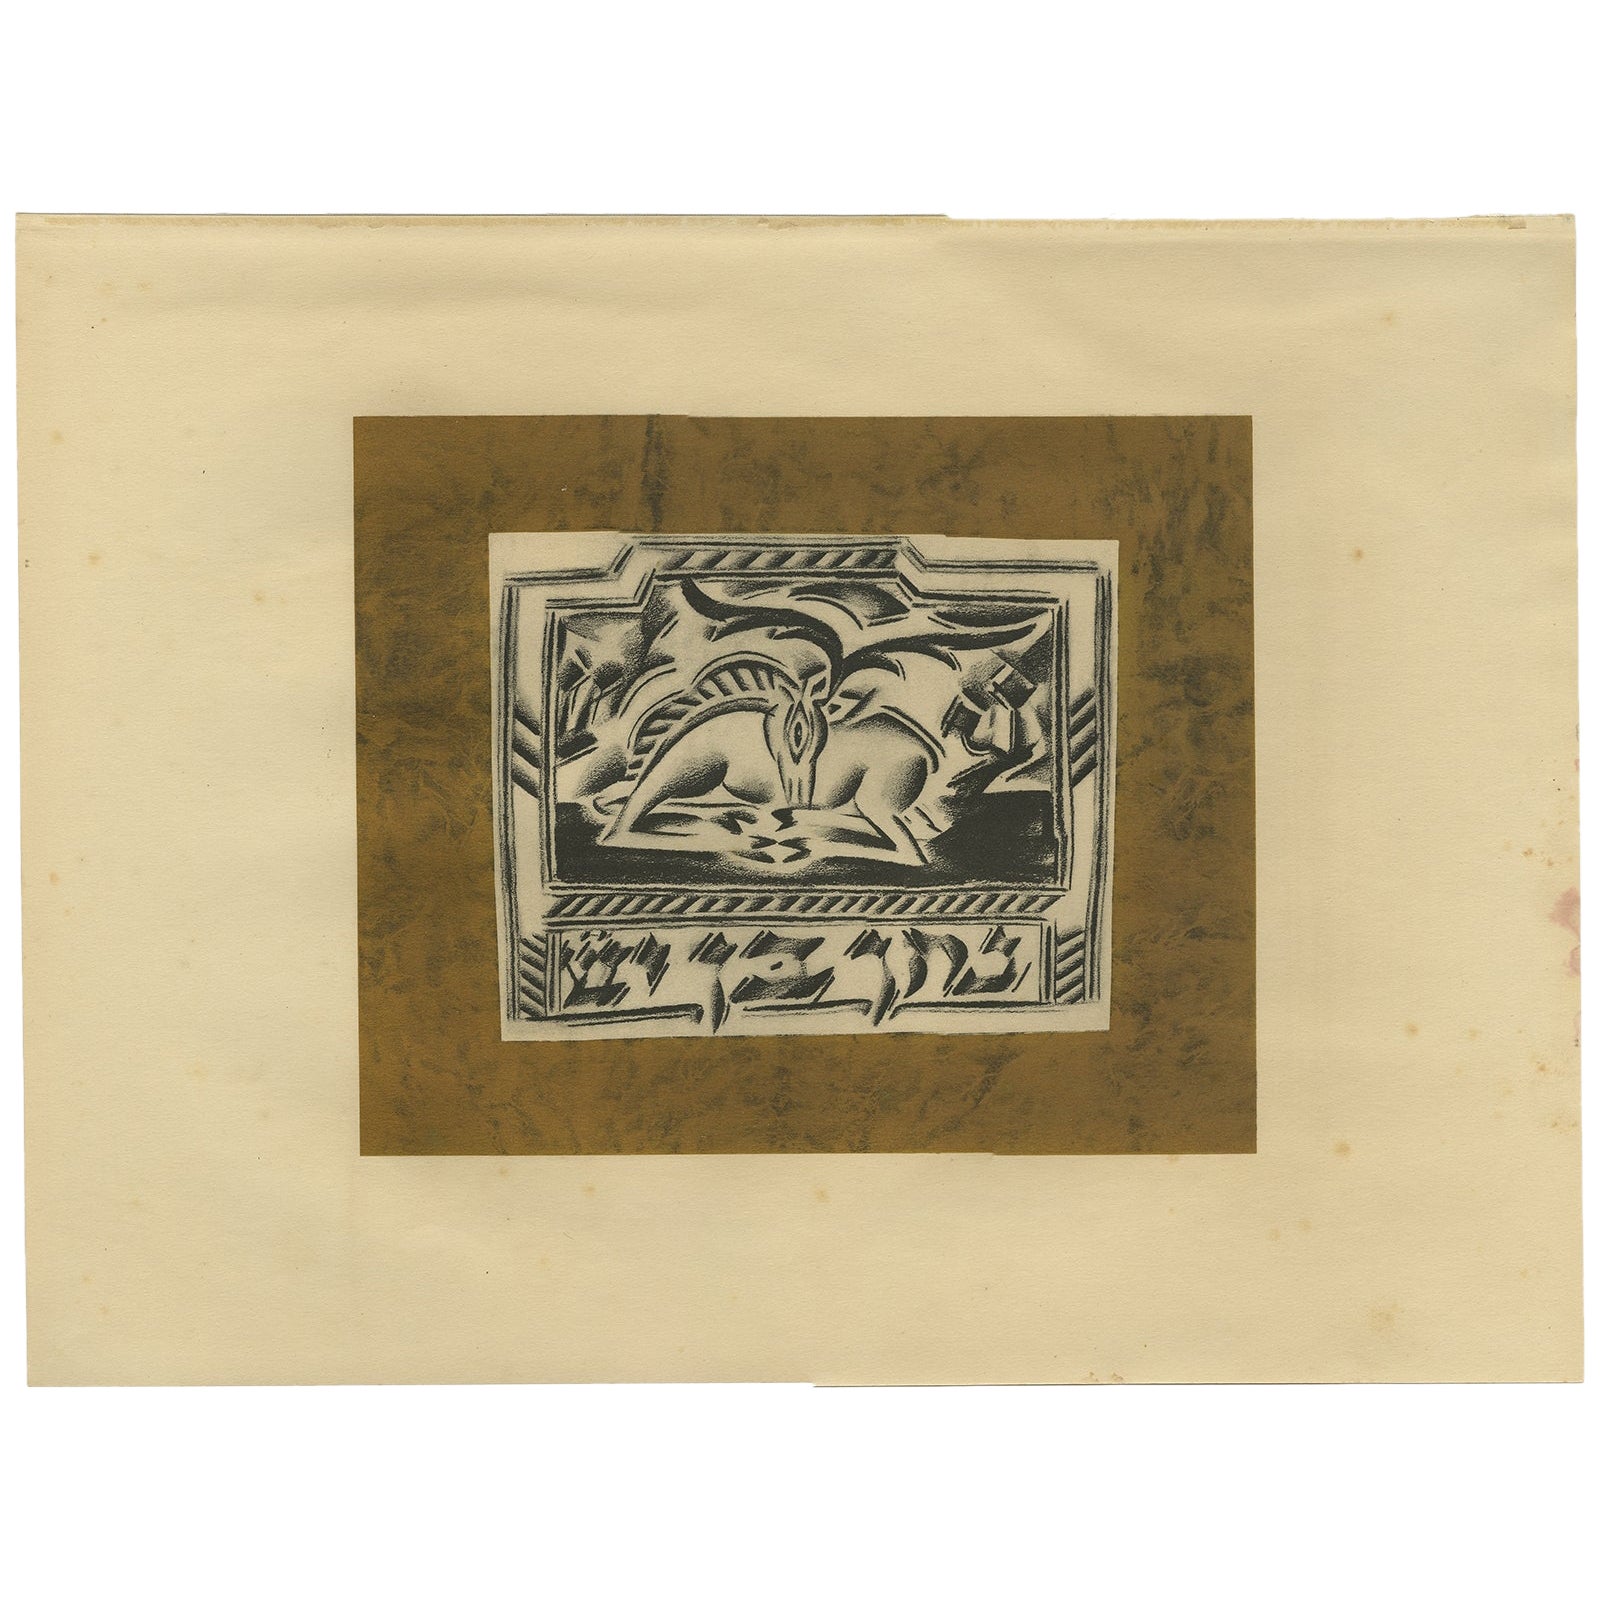 Seltene alte Avantgarde-Kunstlithographie „Der Ruhende Hirsch“ von Altmann aus der Avantgarde '1923'